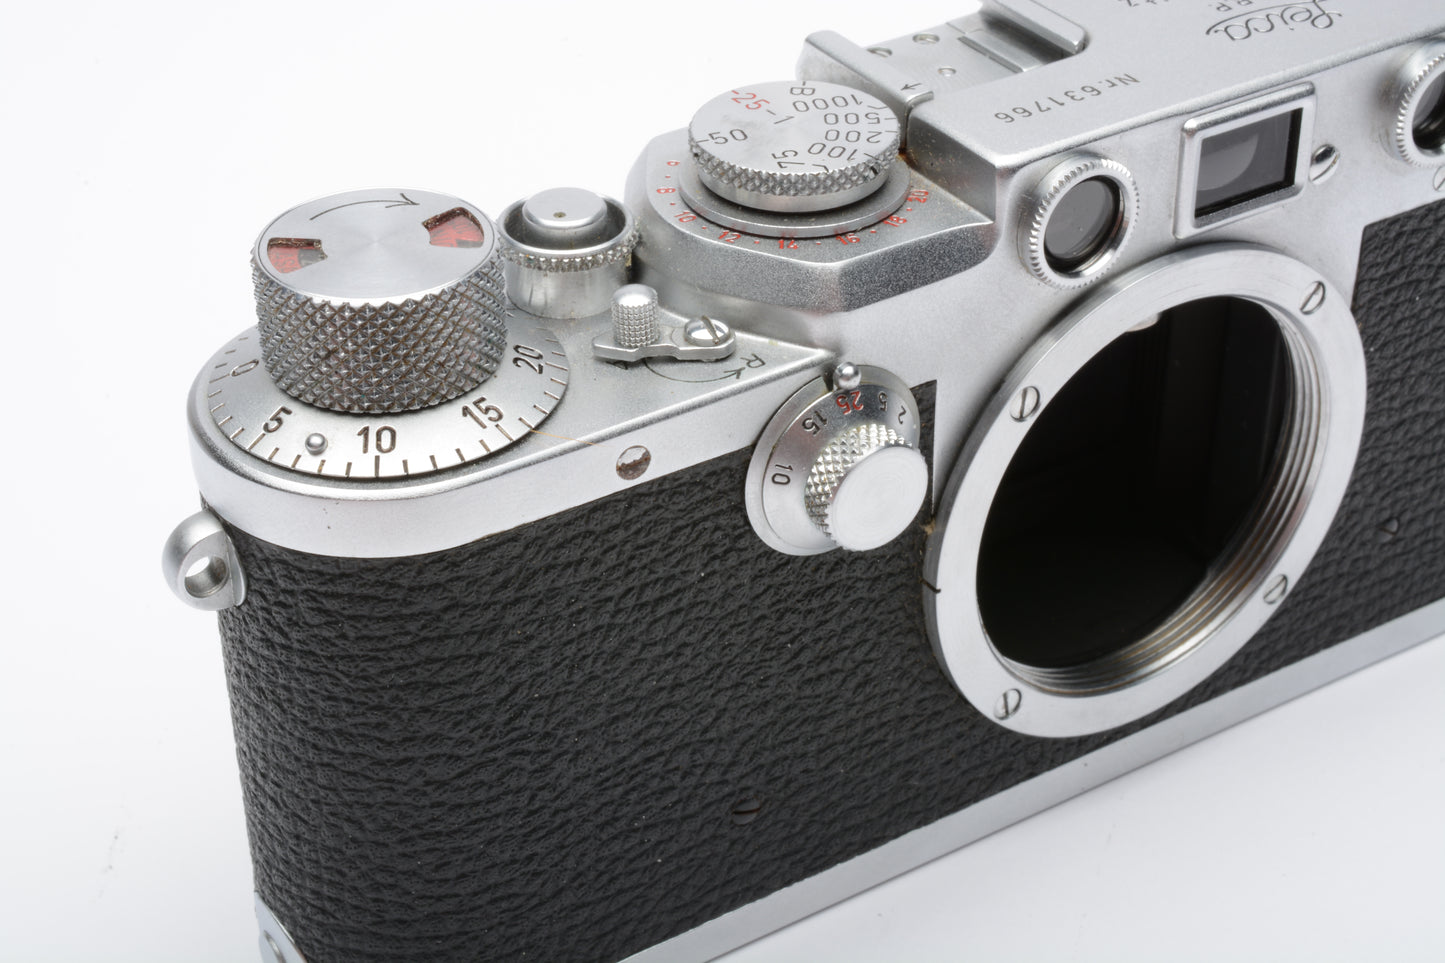 Leica IIIf 35mm rangefinder camera red dial, works great!  Very clean